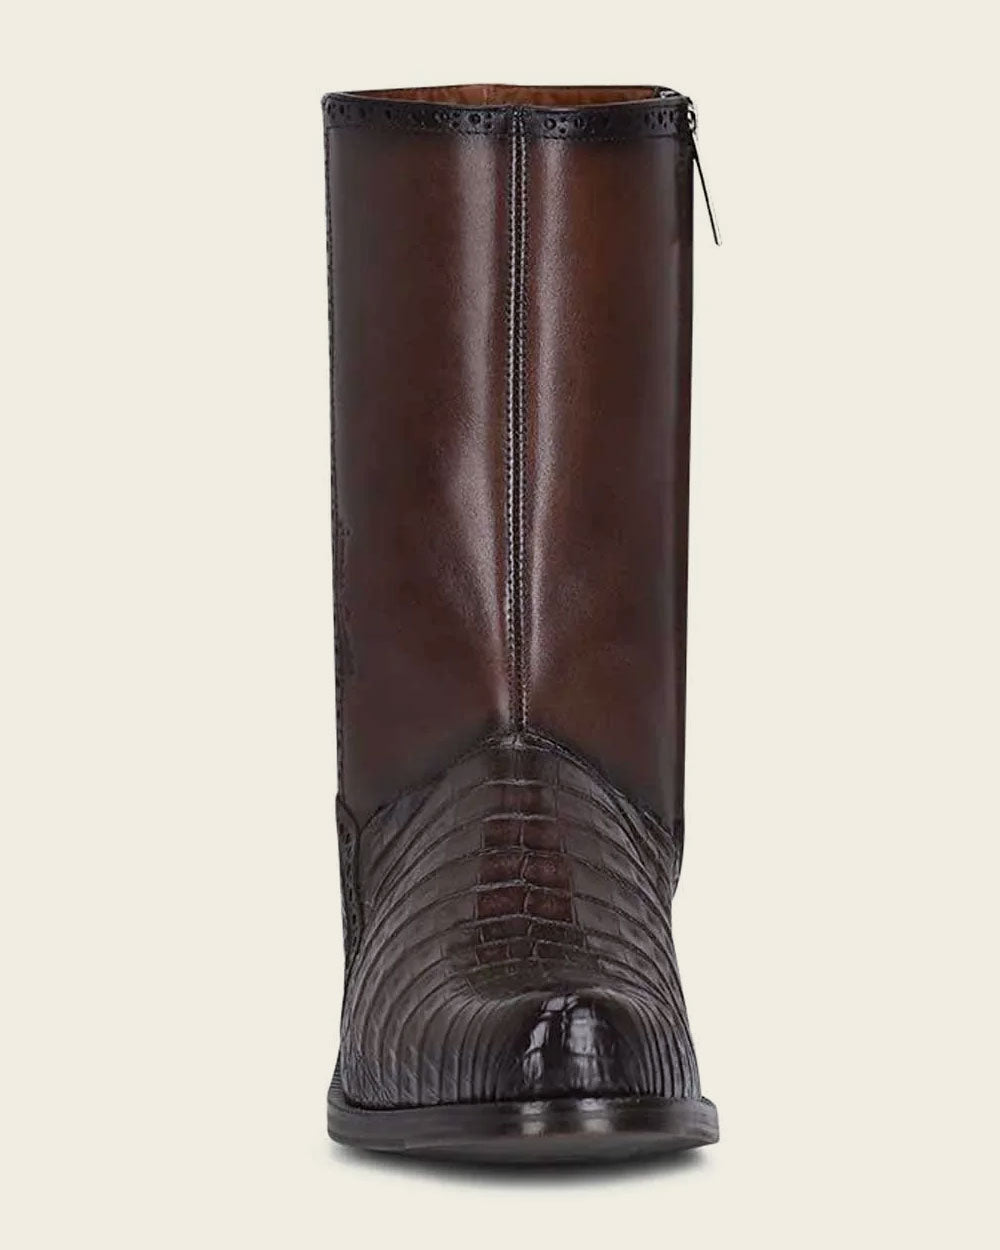 Premium leather boots by Cuadra: Explore superior craftsmanship.